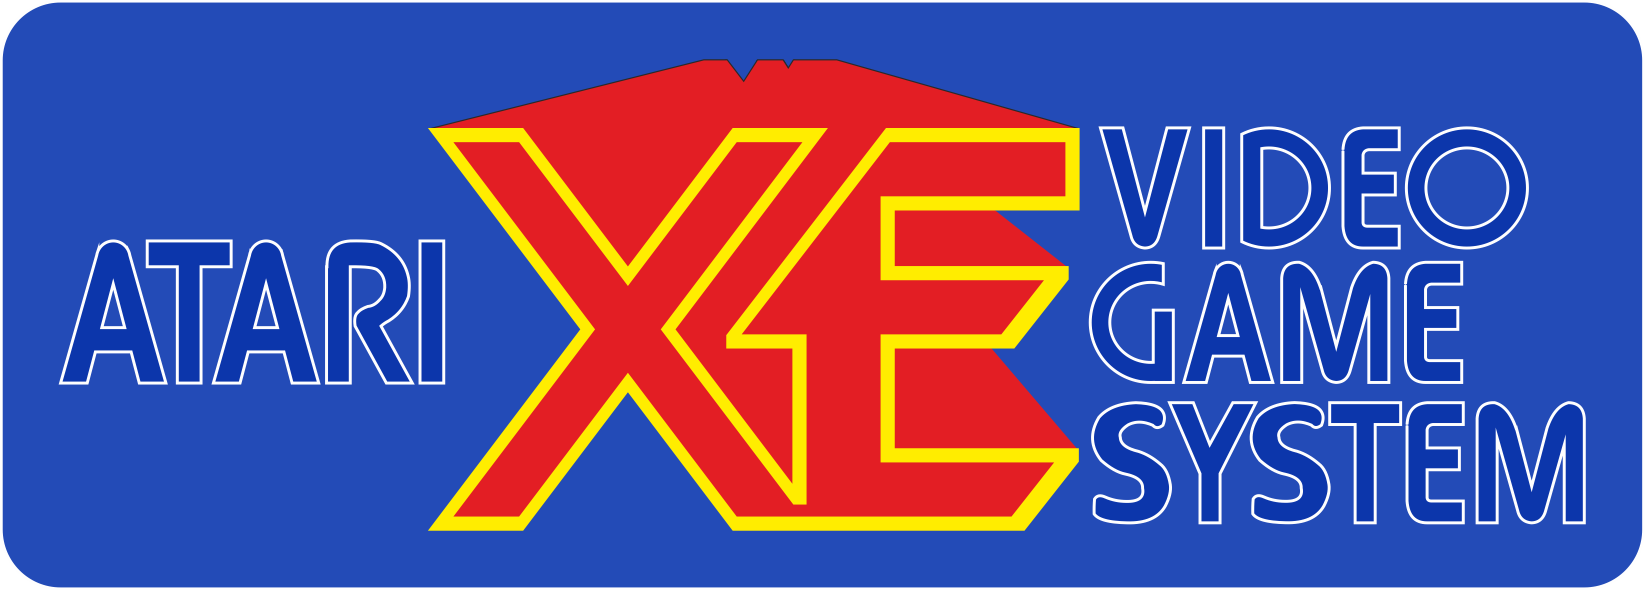 Atari XEGS: logo